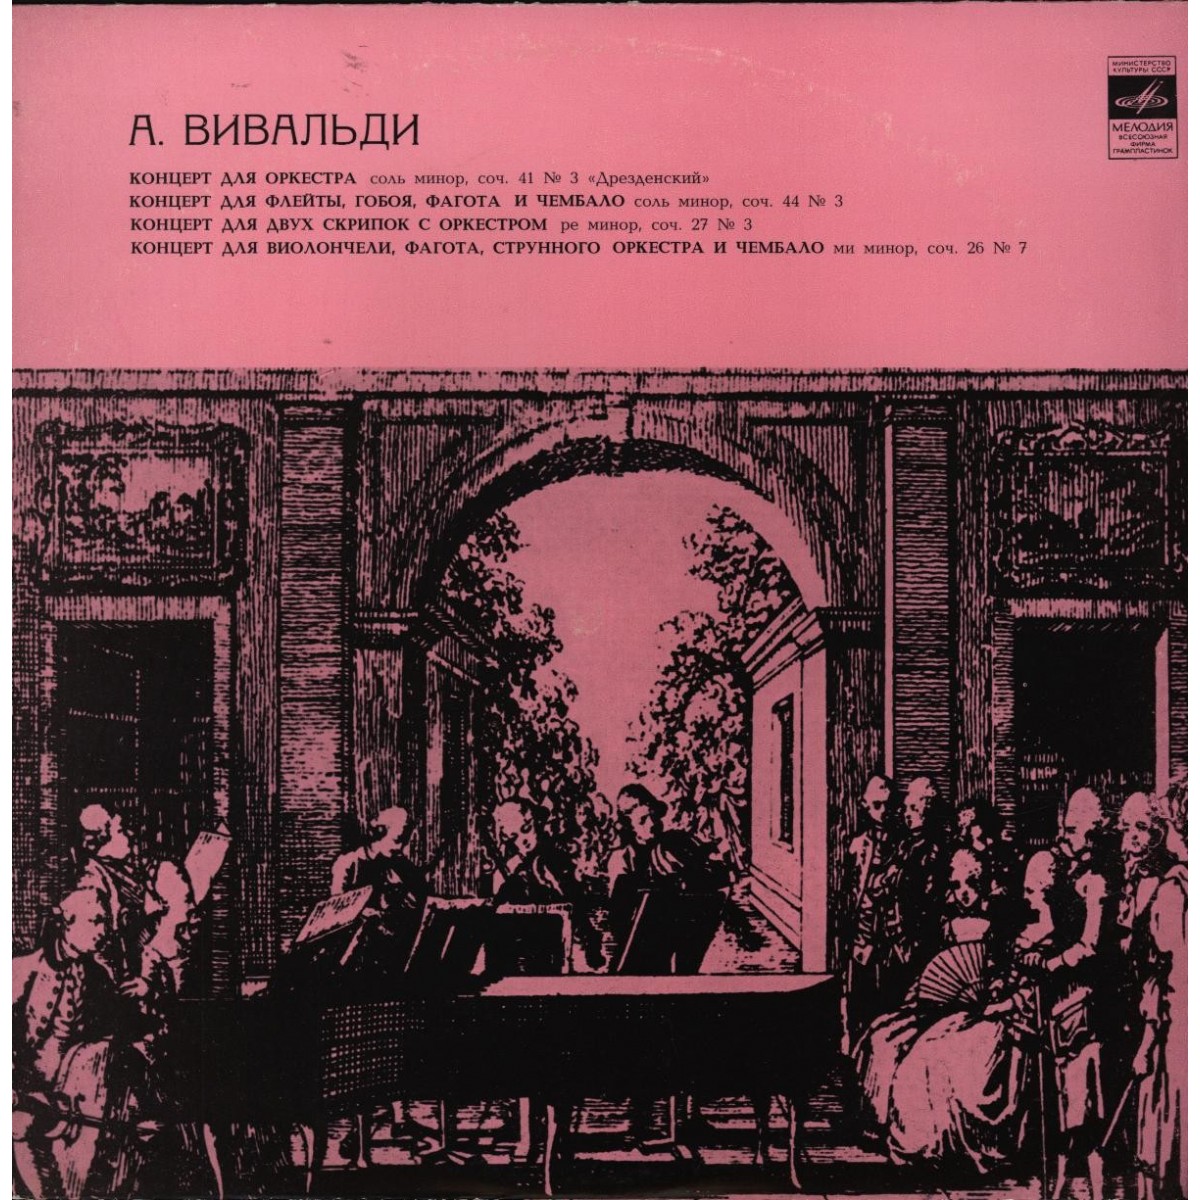 А. Вивальди: Концерты (Московский камерный оркестр, Р. Баршай)